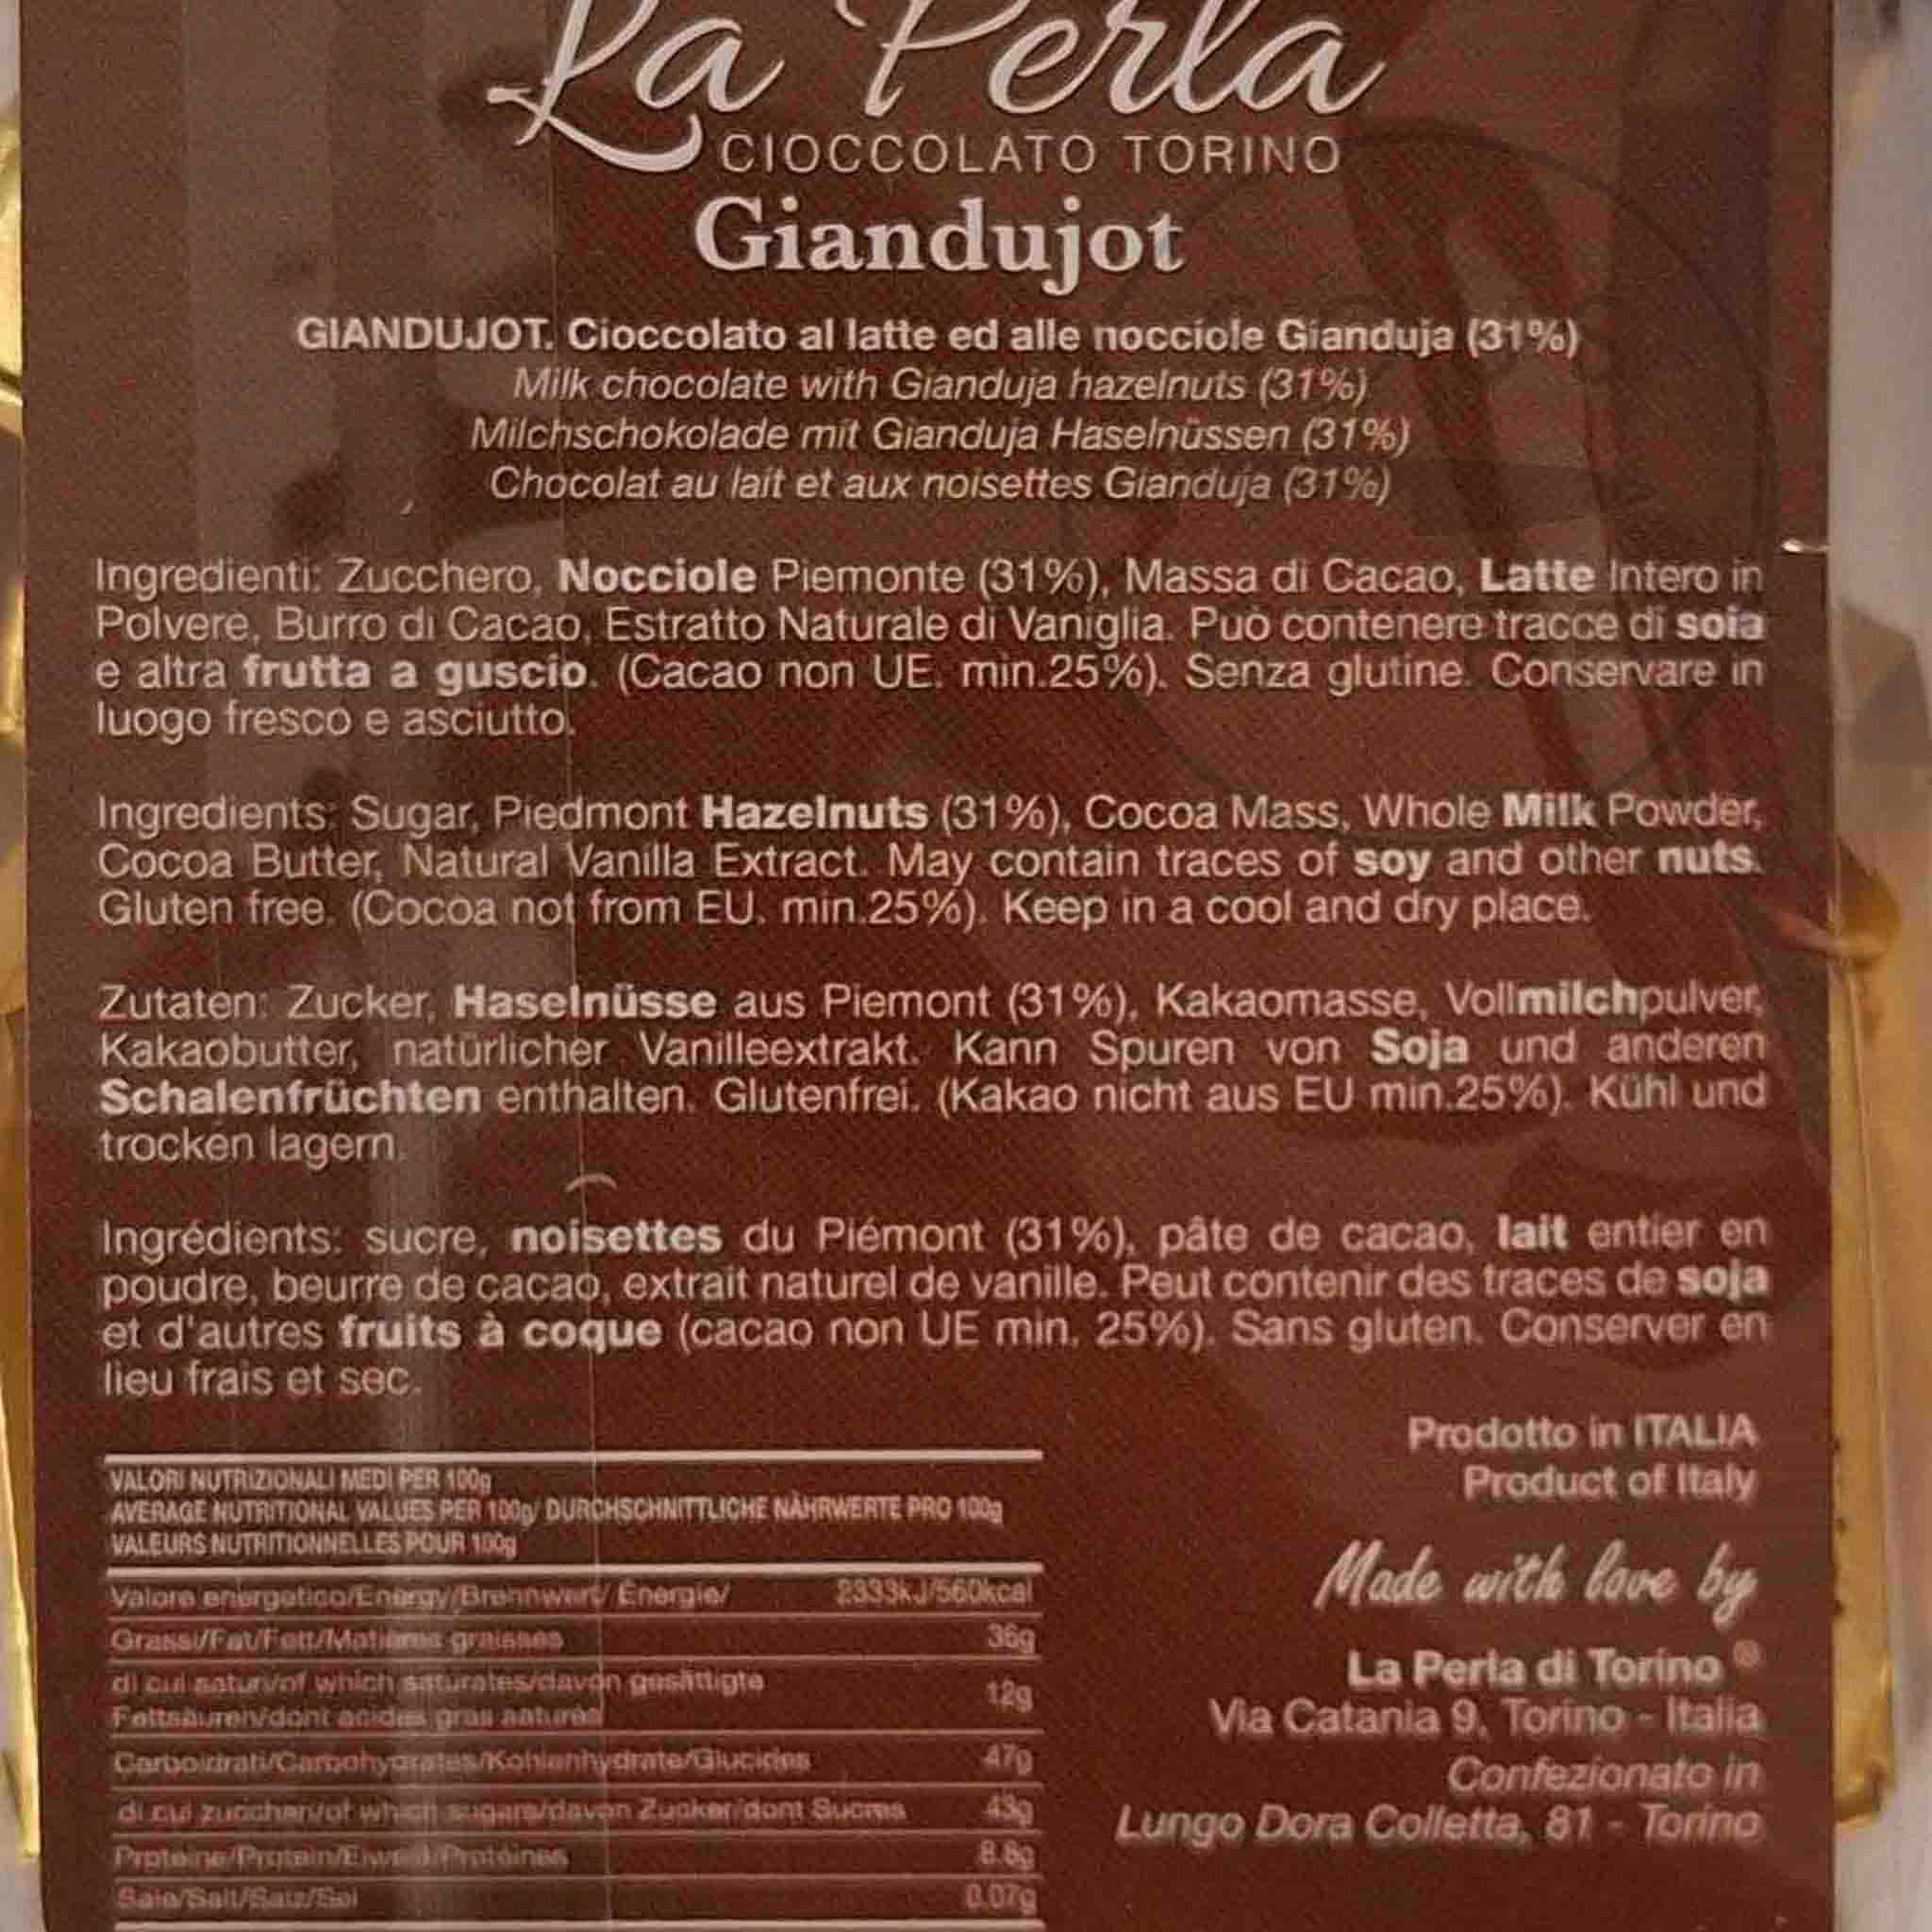 La Perla di Torino Gianduja 'Giandujot', 200g